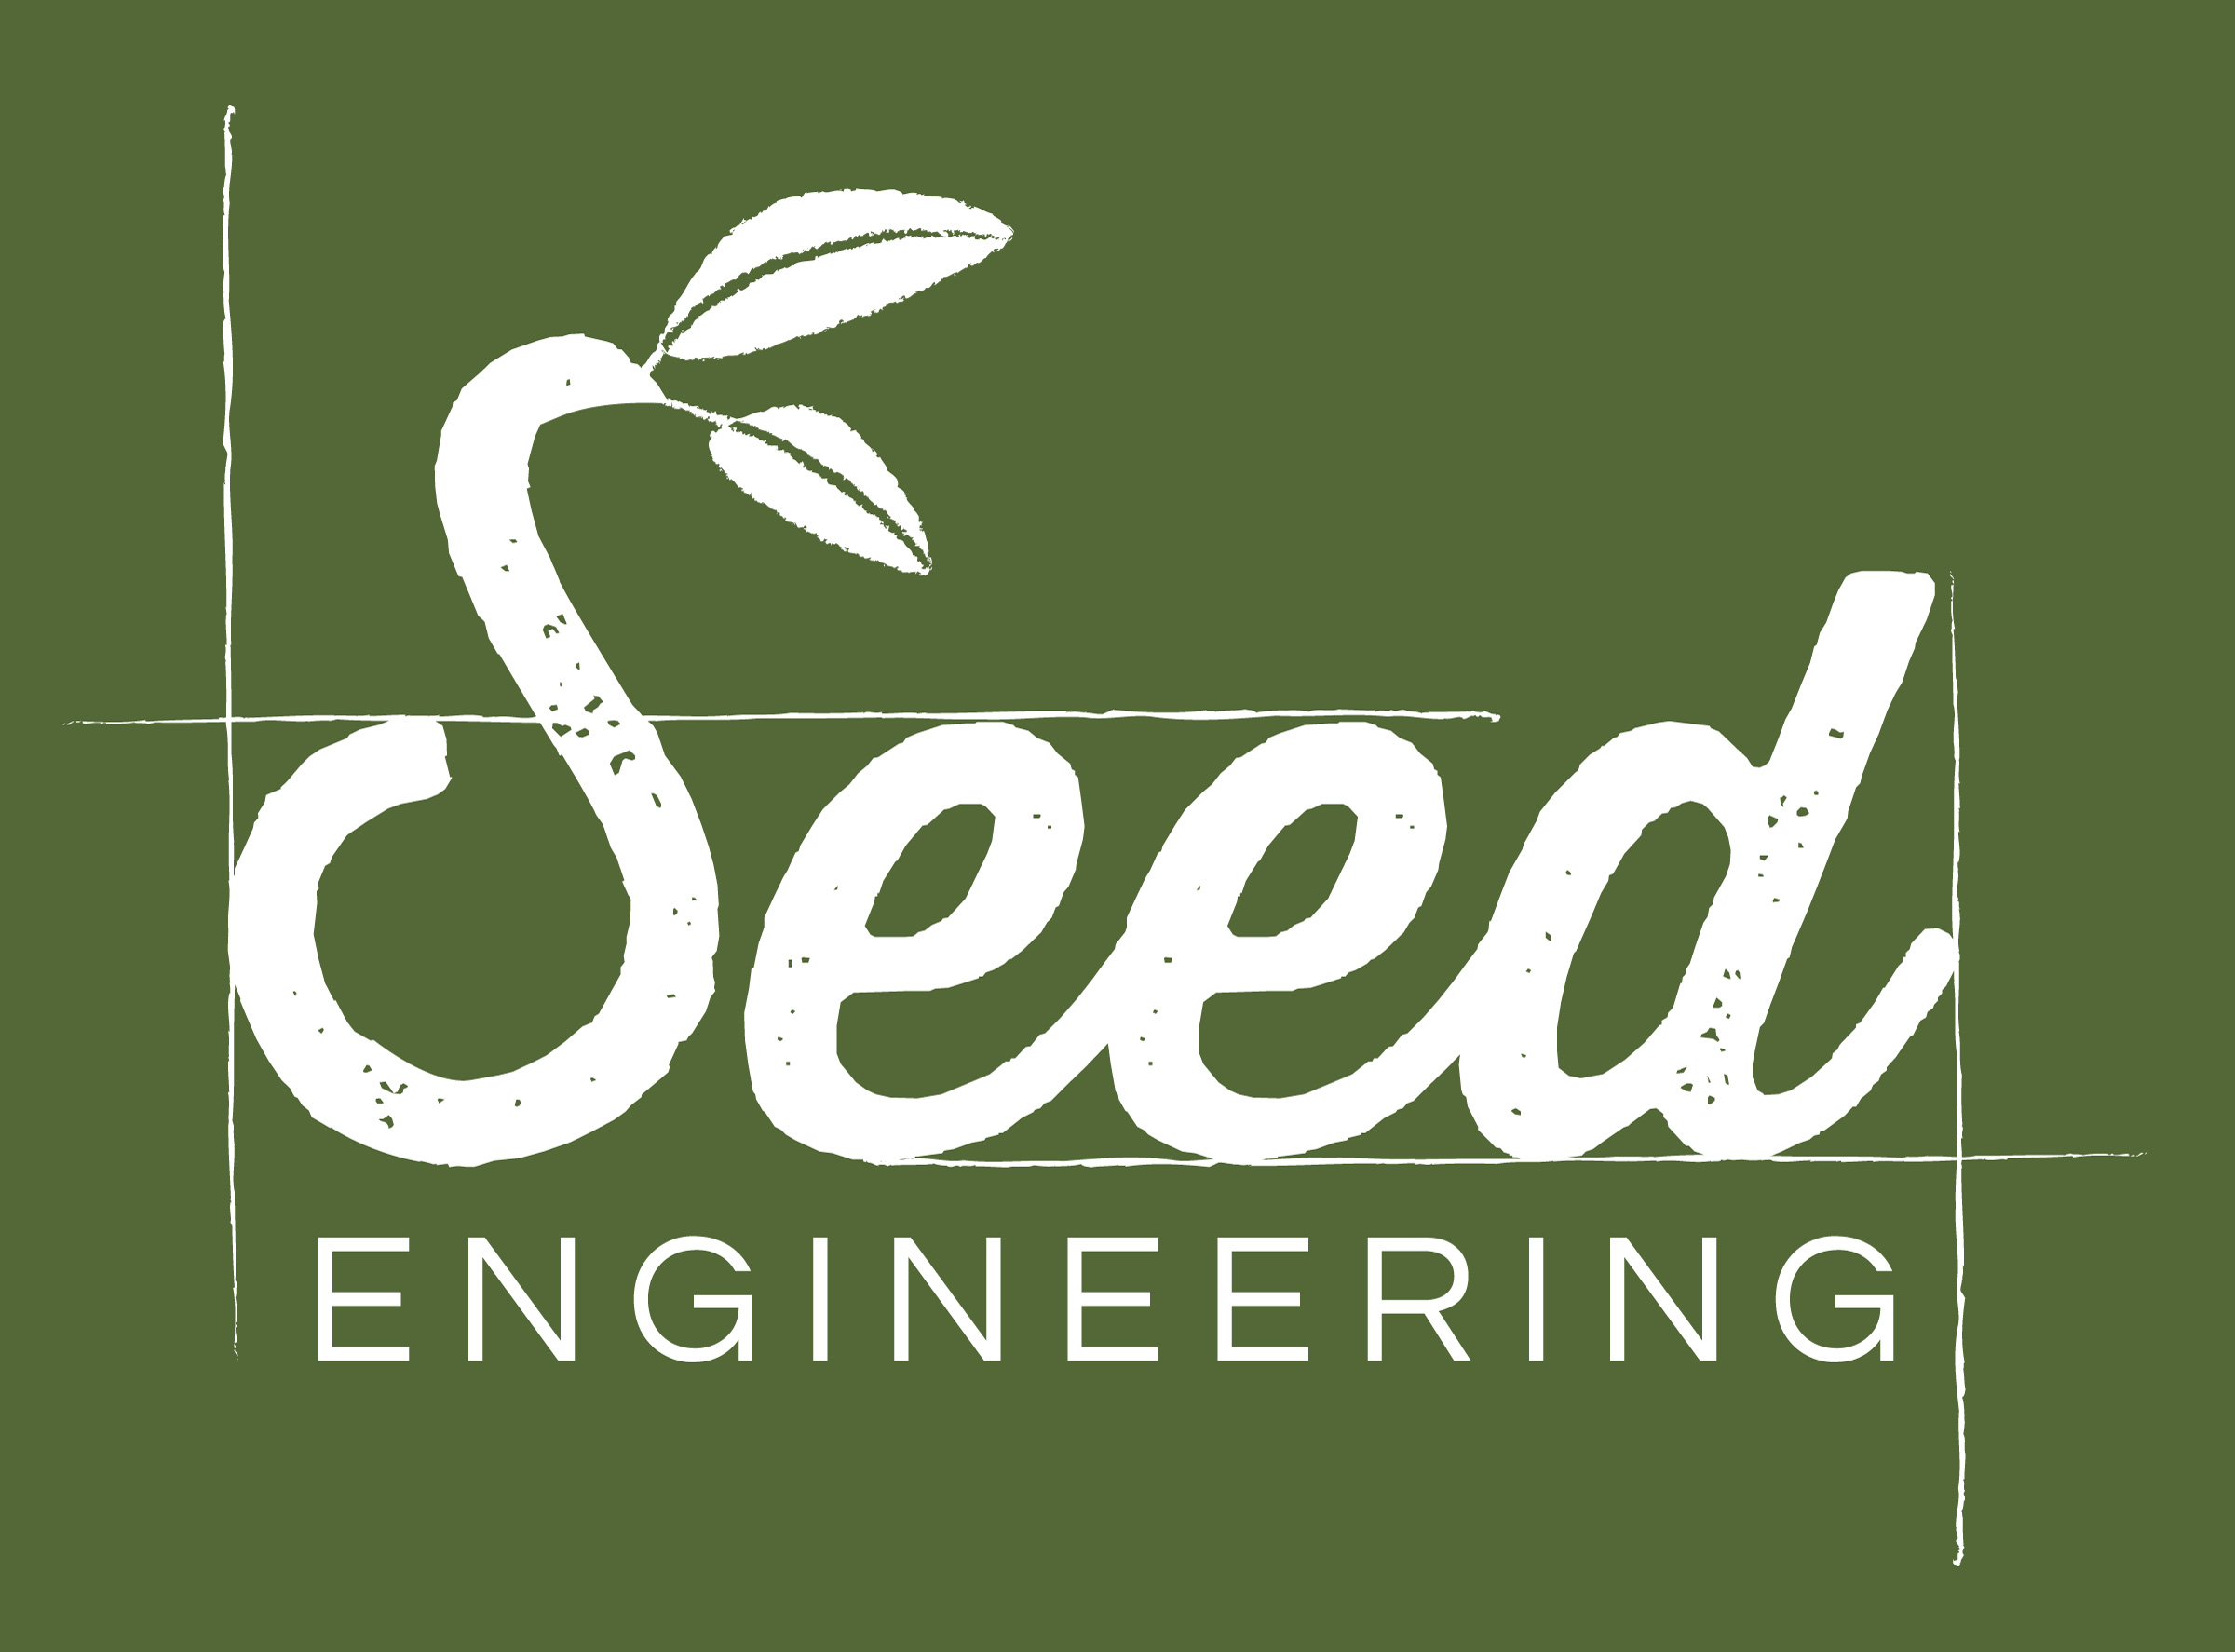 161031-Seed_Engineering_logo_FINALreversed_green.jpg;